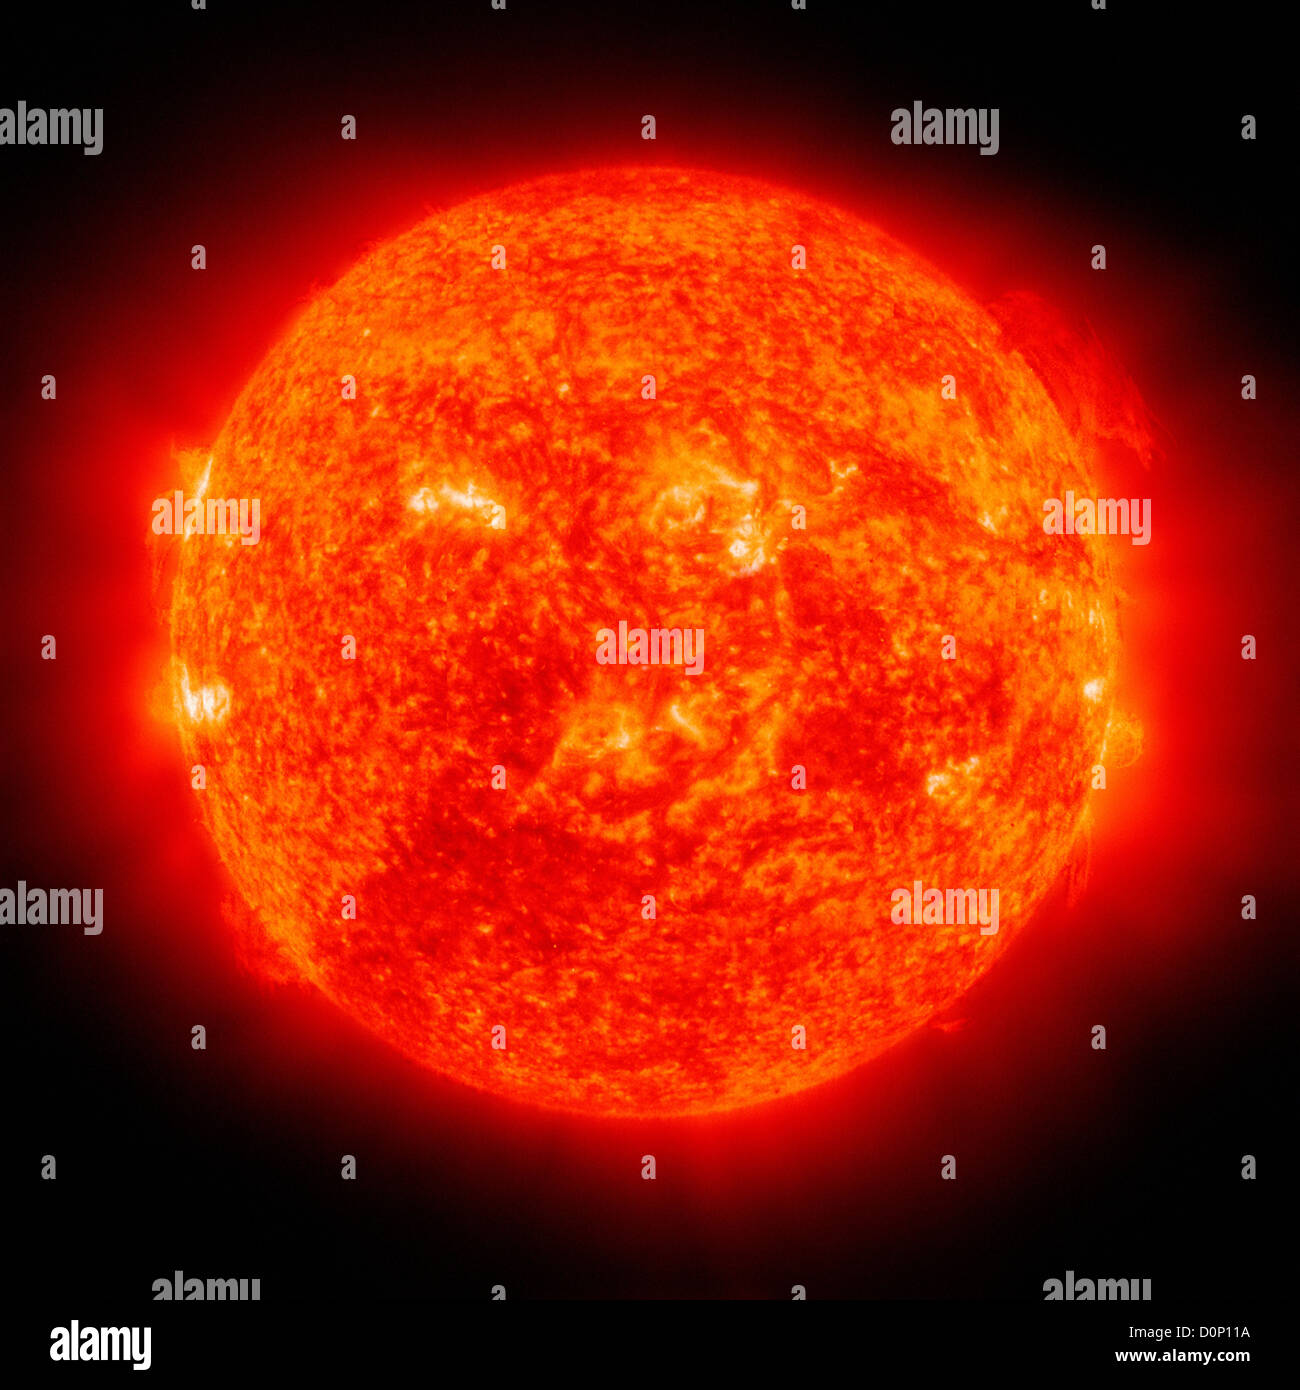 Die Anfänge große Sonnen-Protuberanz kann gesehen 02:00 auf Sonne in diesem Solar Heliospheric Observatory (SOHO) Bild positionieren Stockfoto